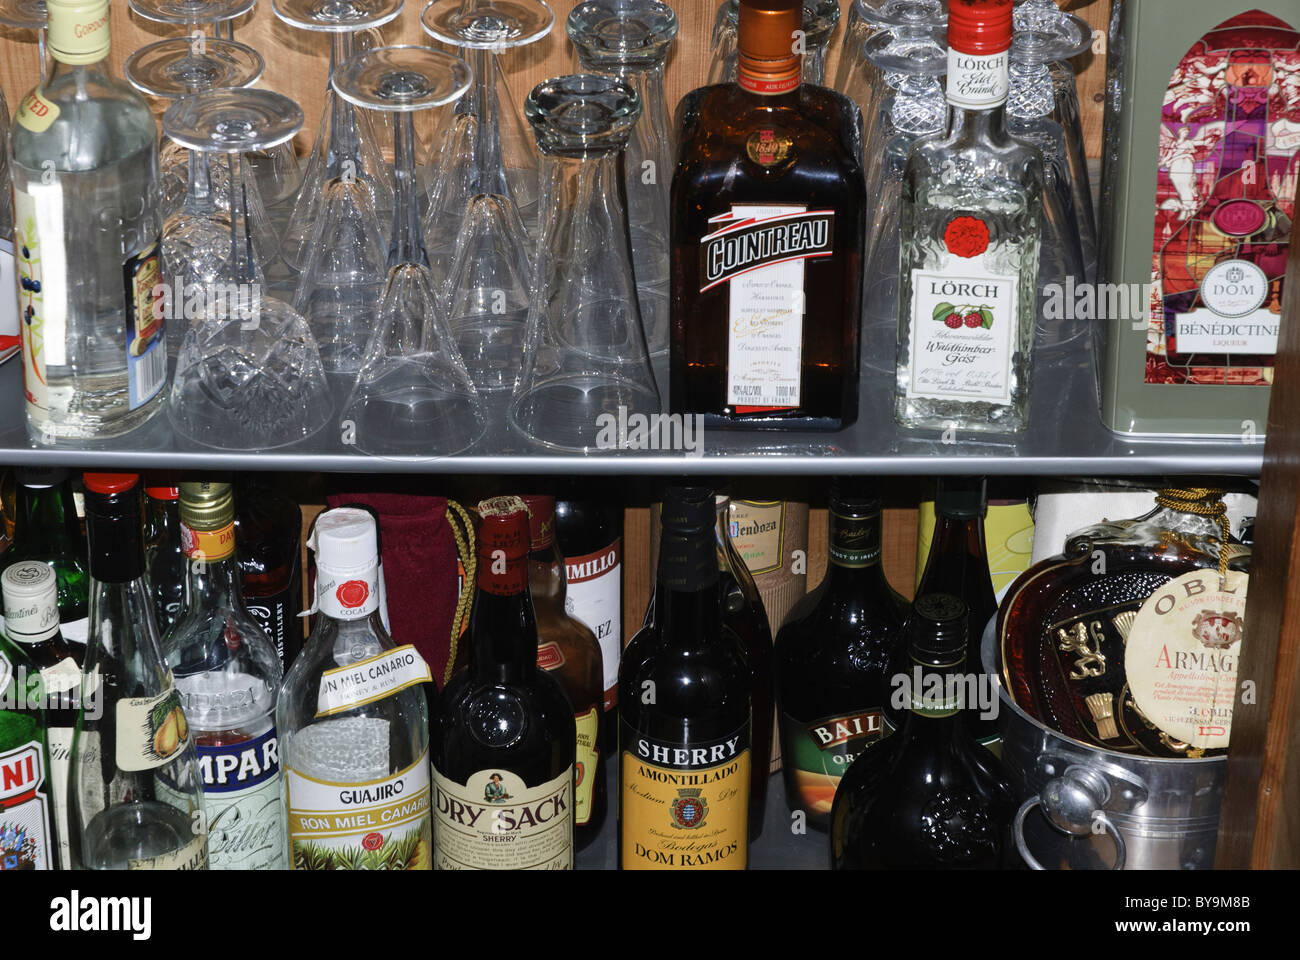 Alkohol bar Schrank Gläser und Getränke Flaschen Stockfotografie - Alamy